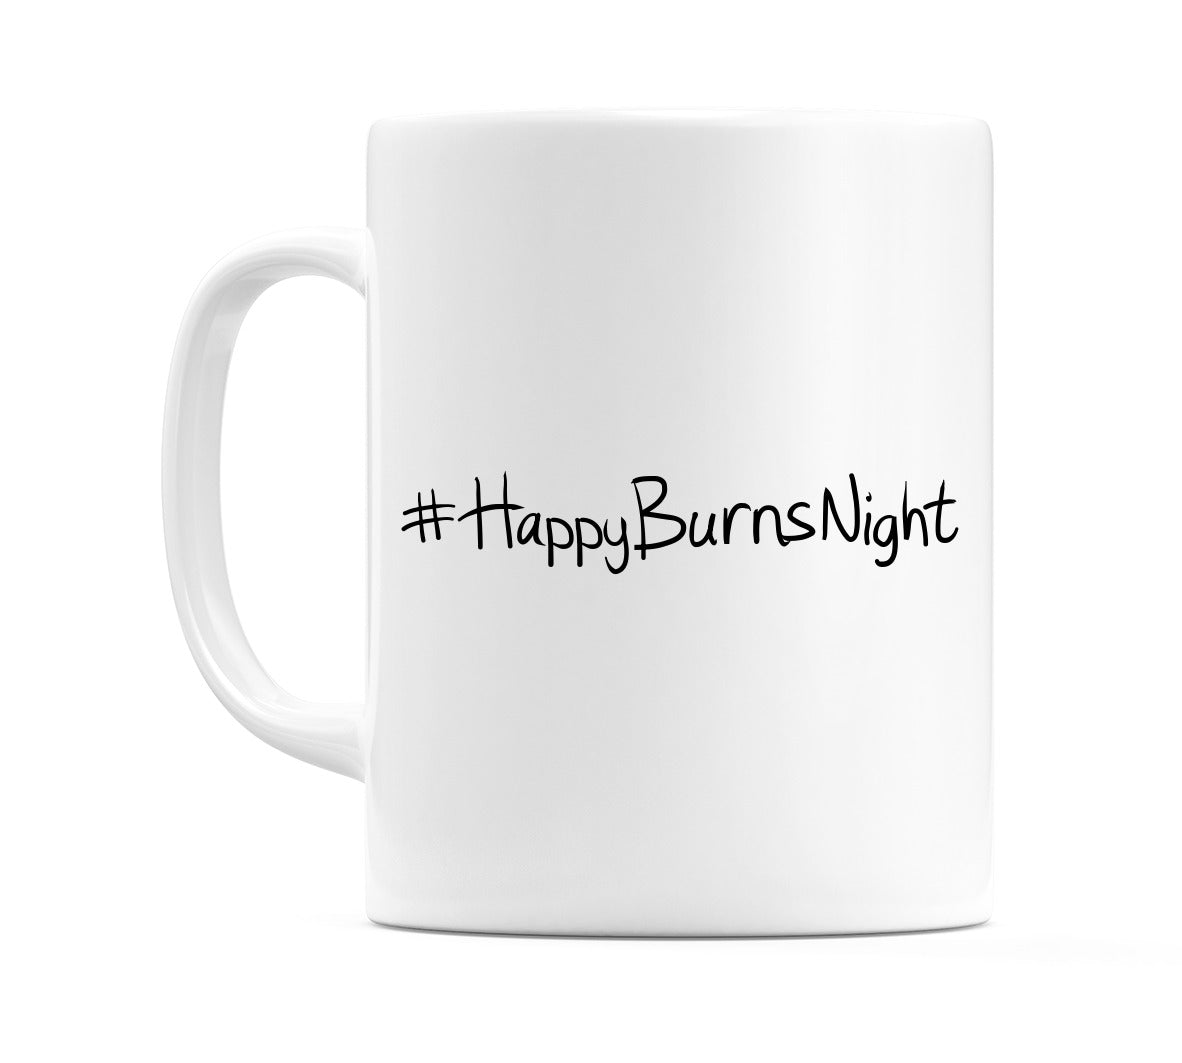 #HappyBurnsNight Mug